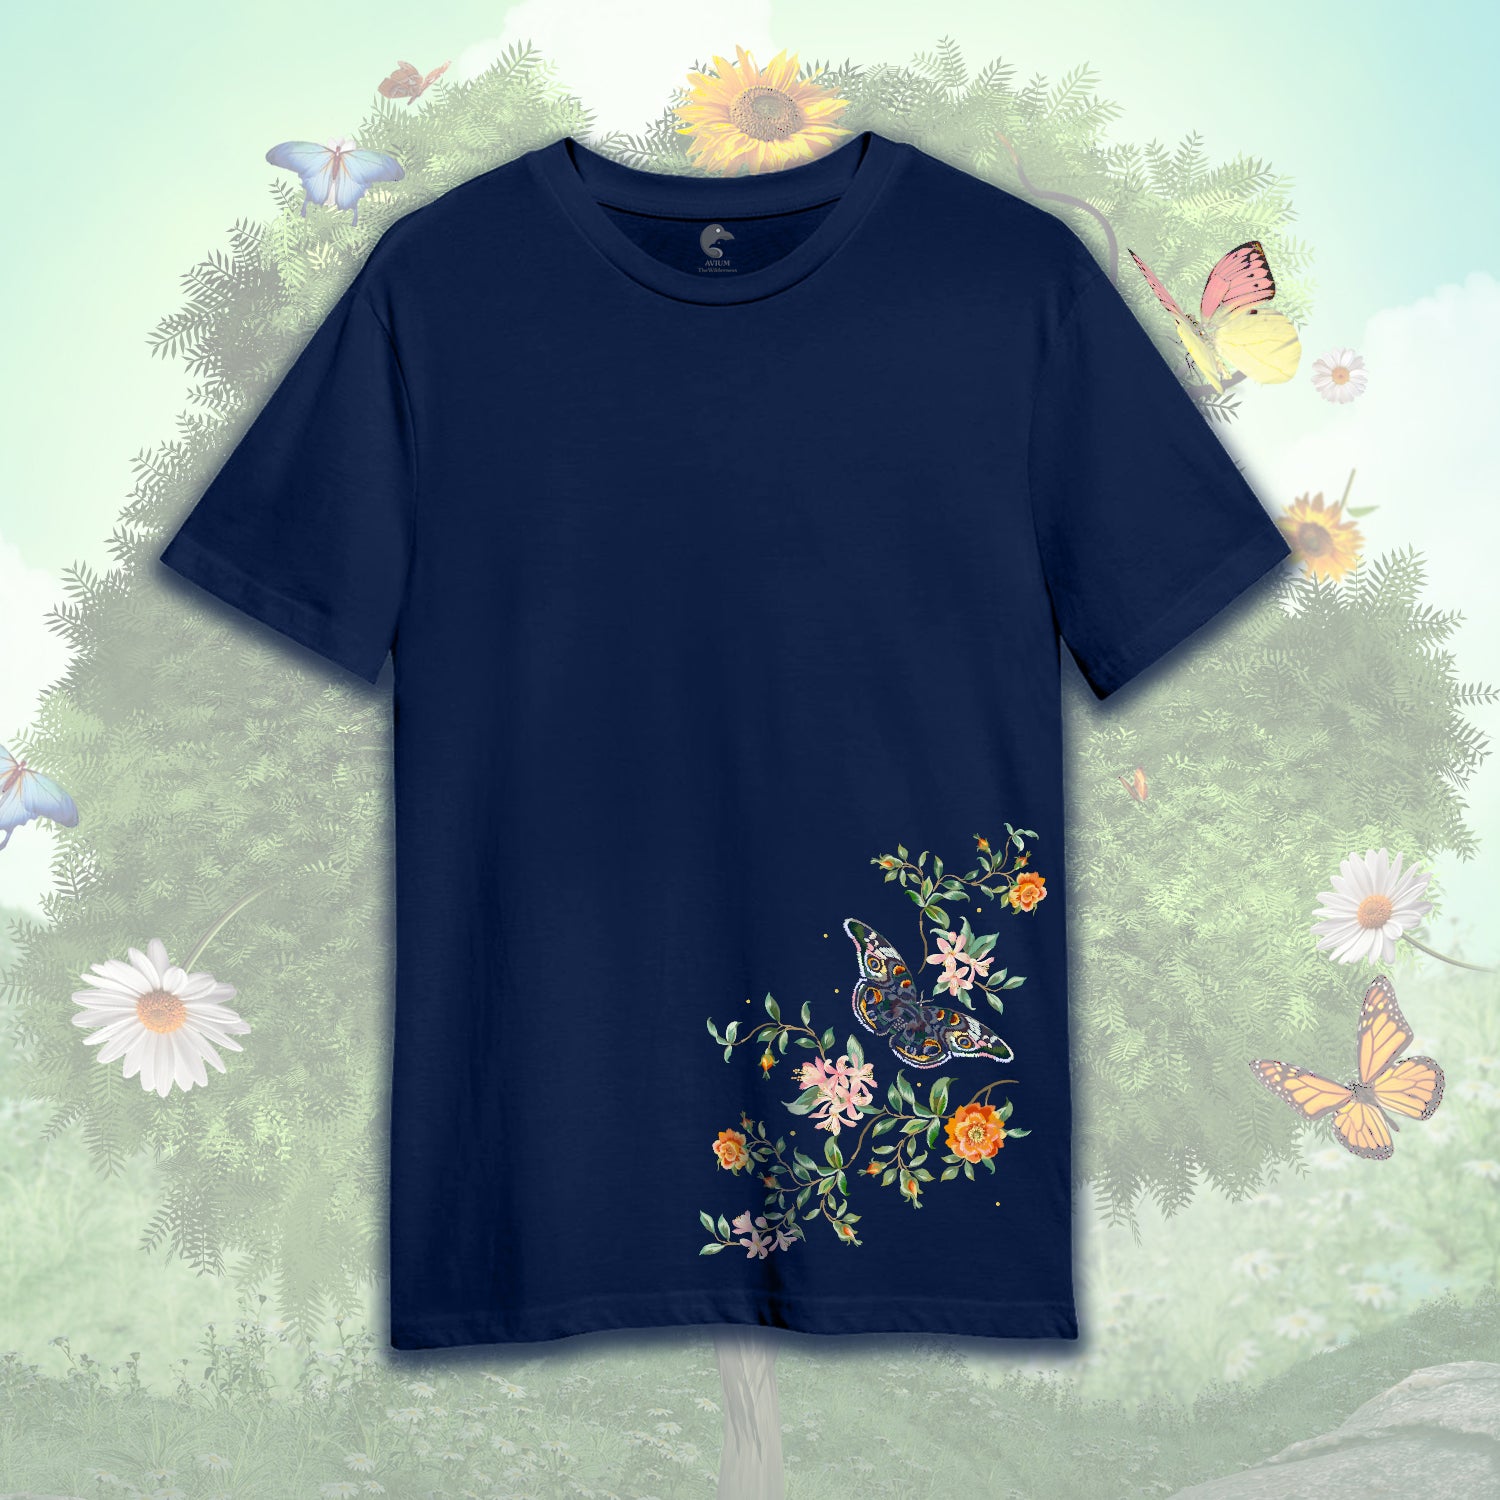 Fluttering Elegance: Butterfly Design Regular Fit T-Shirt for Stylish Comfort